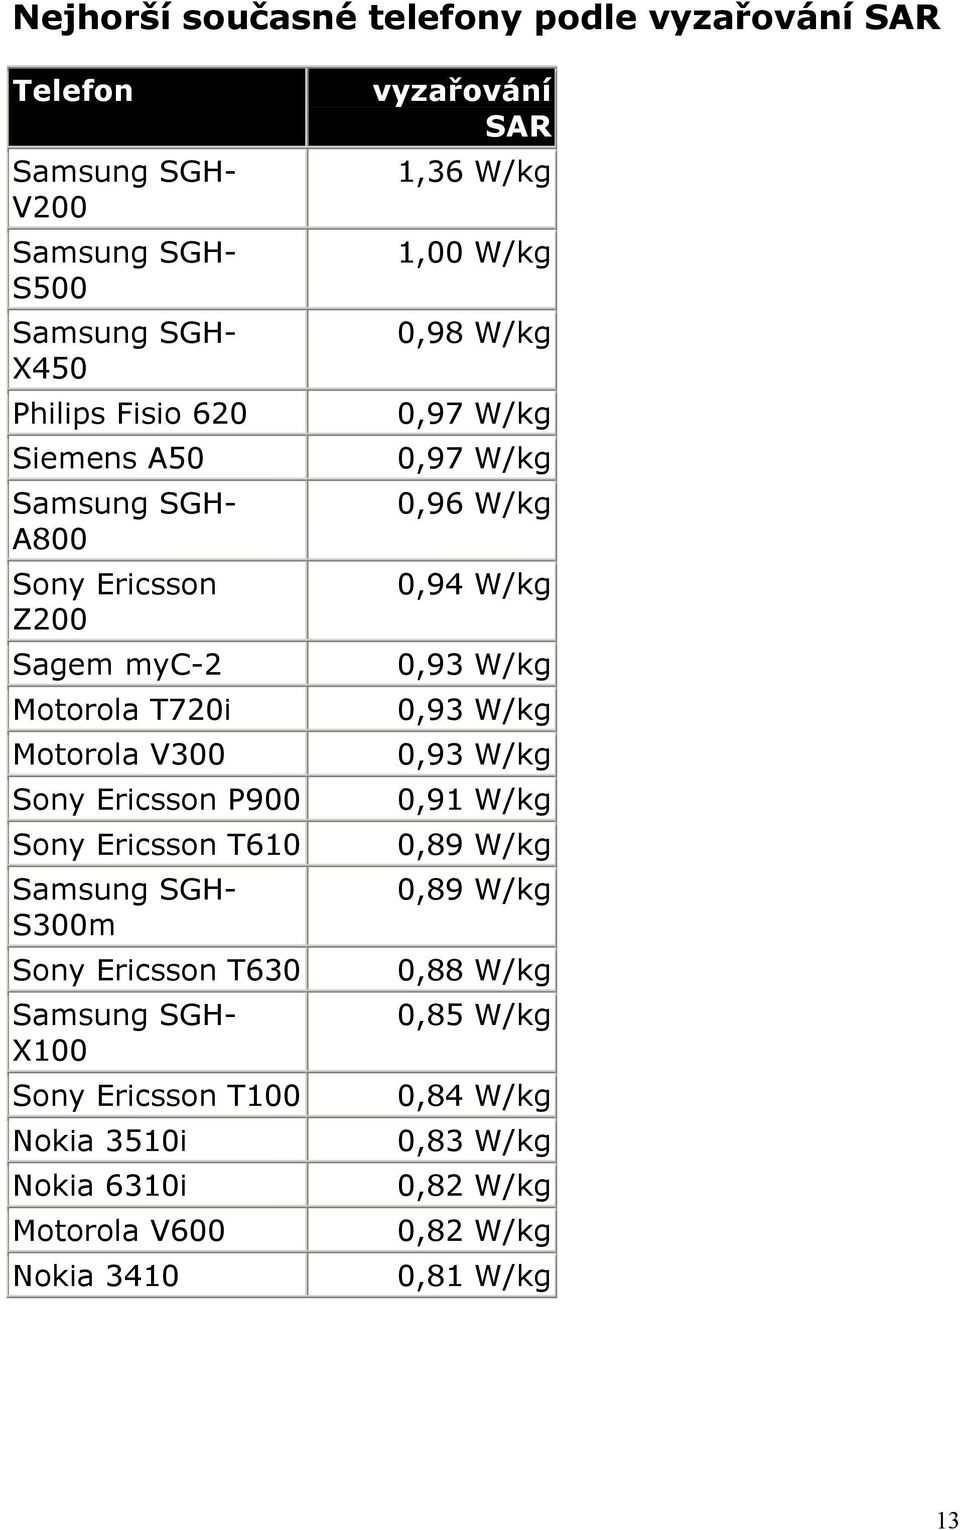 Samsung SGH- X100 Sony Ericsson T100 Nokia 3510i Nokia 6310i Motorola V600 Nokia 3410 vyzařování SAR 1,36 W/kg 1,00 W/kg 0,98 W/kg 0,97 W/kg 0,97